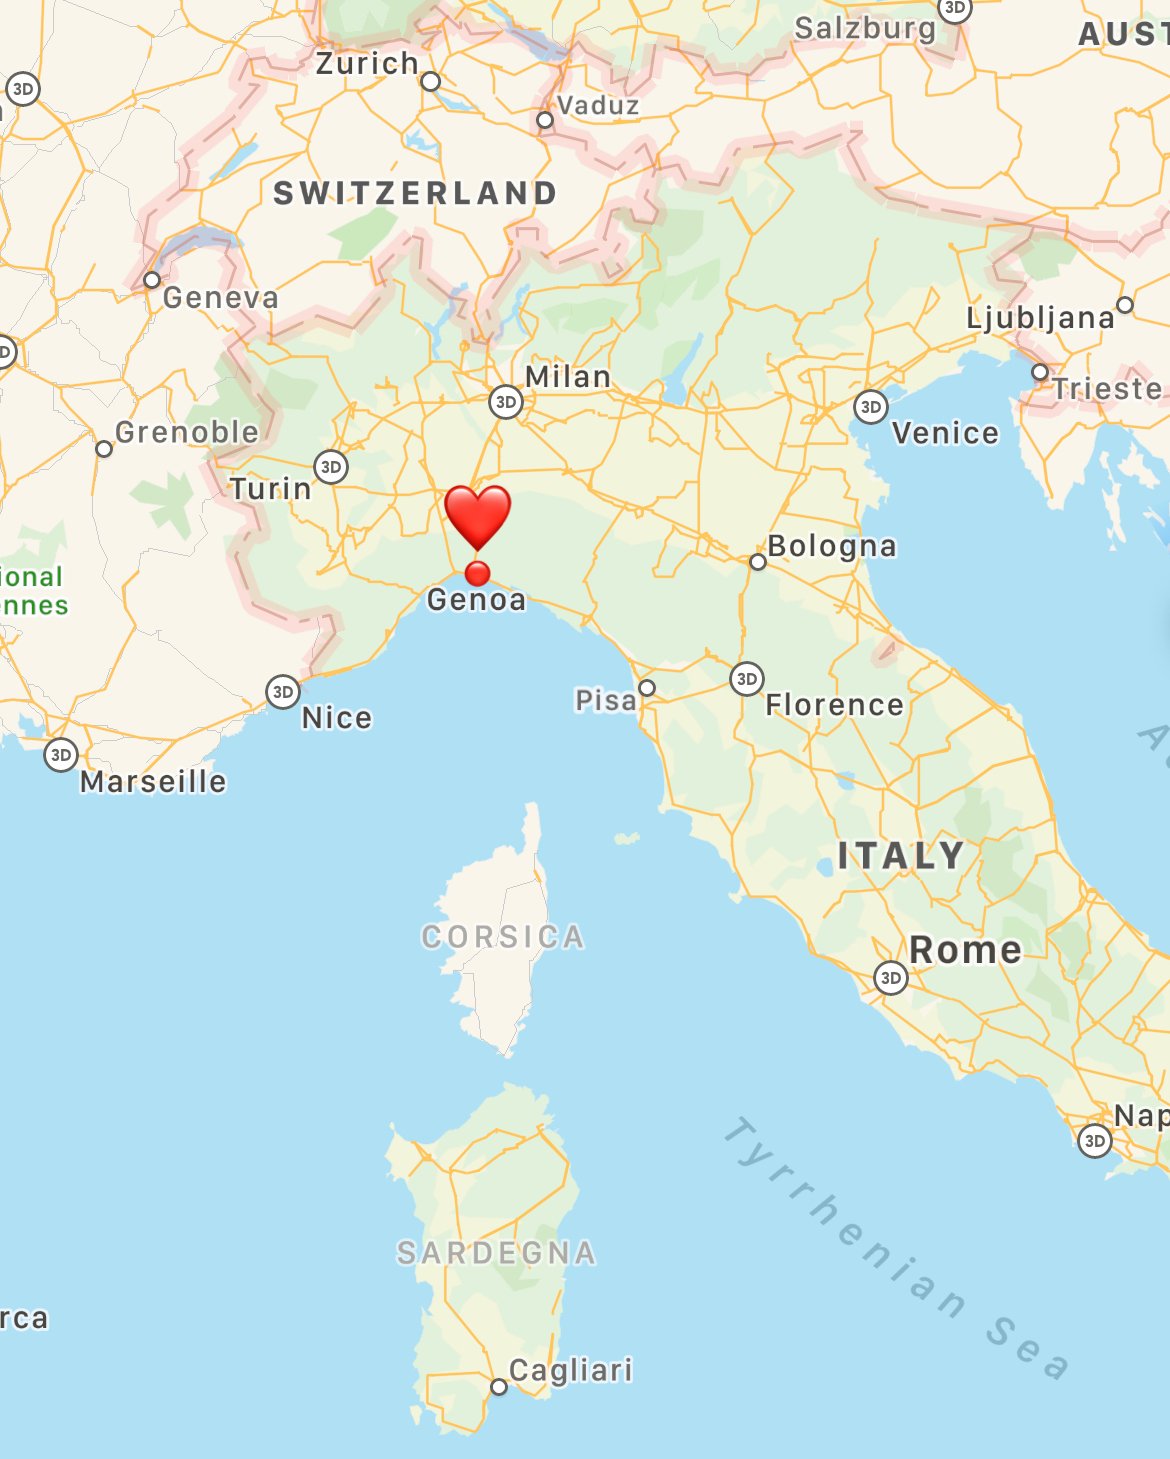 where is Genoa italy